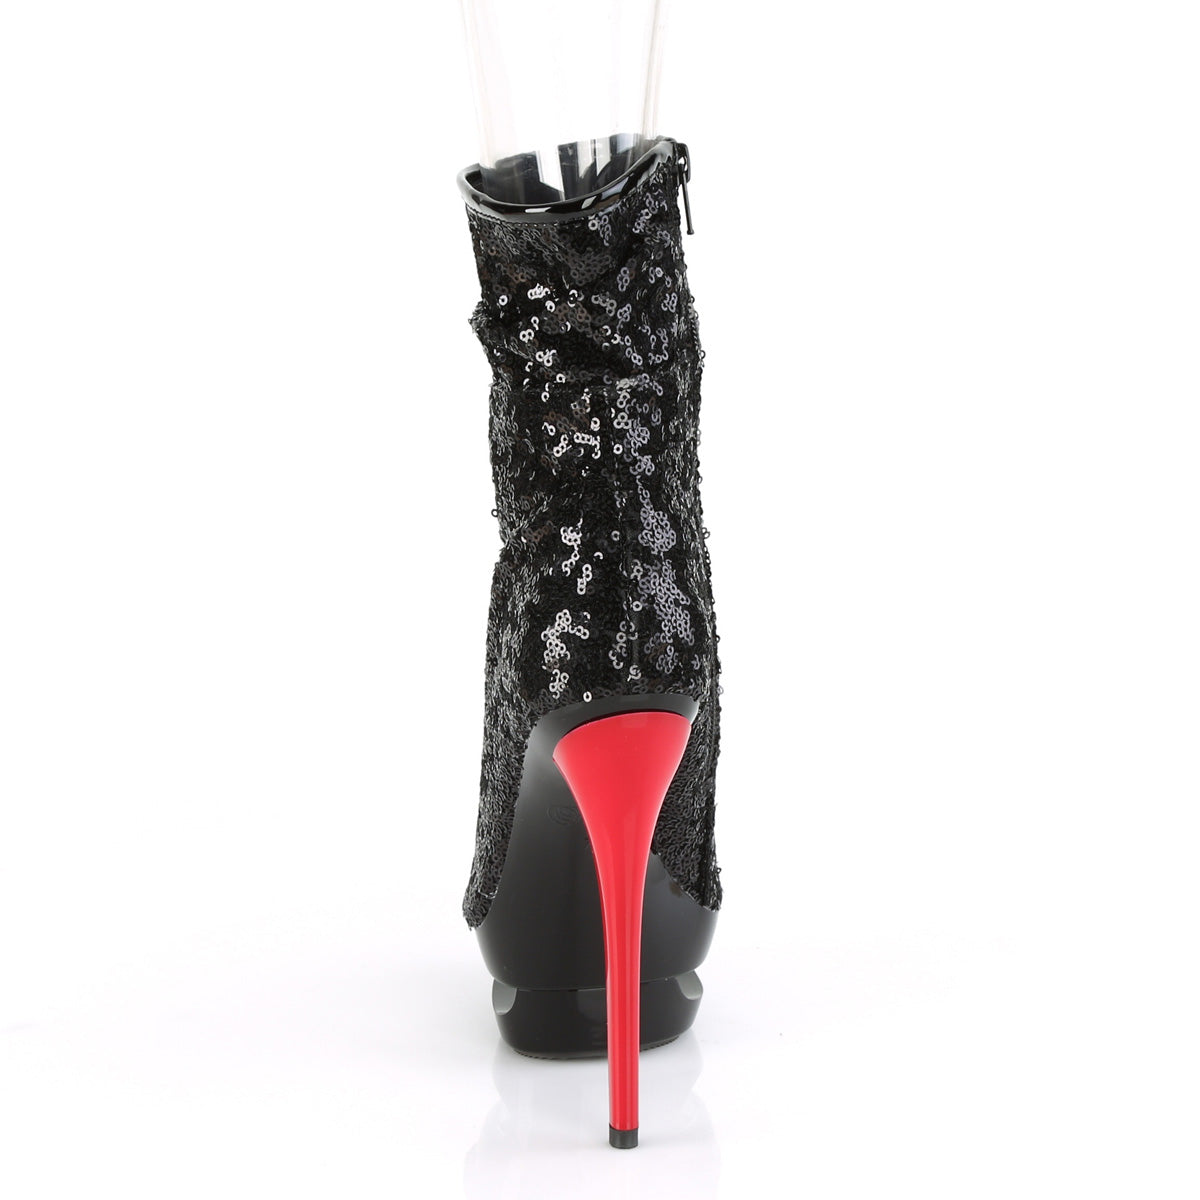 BLONDIE-R-1008 Black Sequins/Black-Red Ankle Boot Pleaser